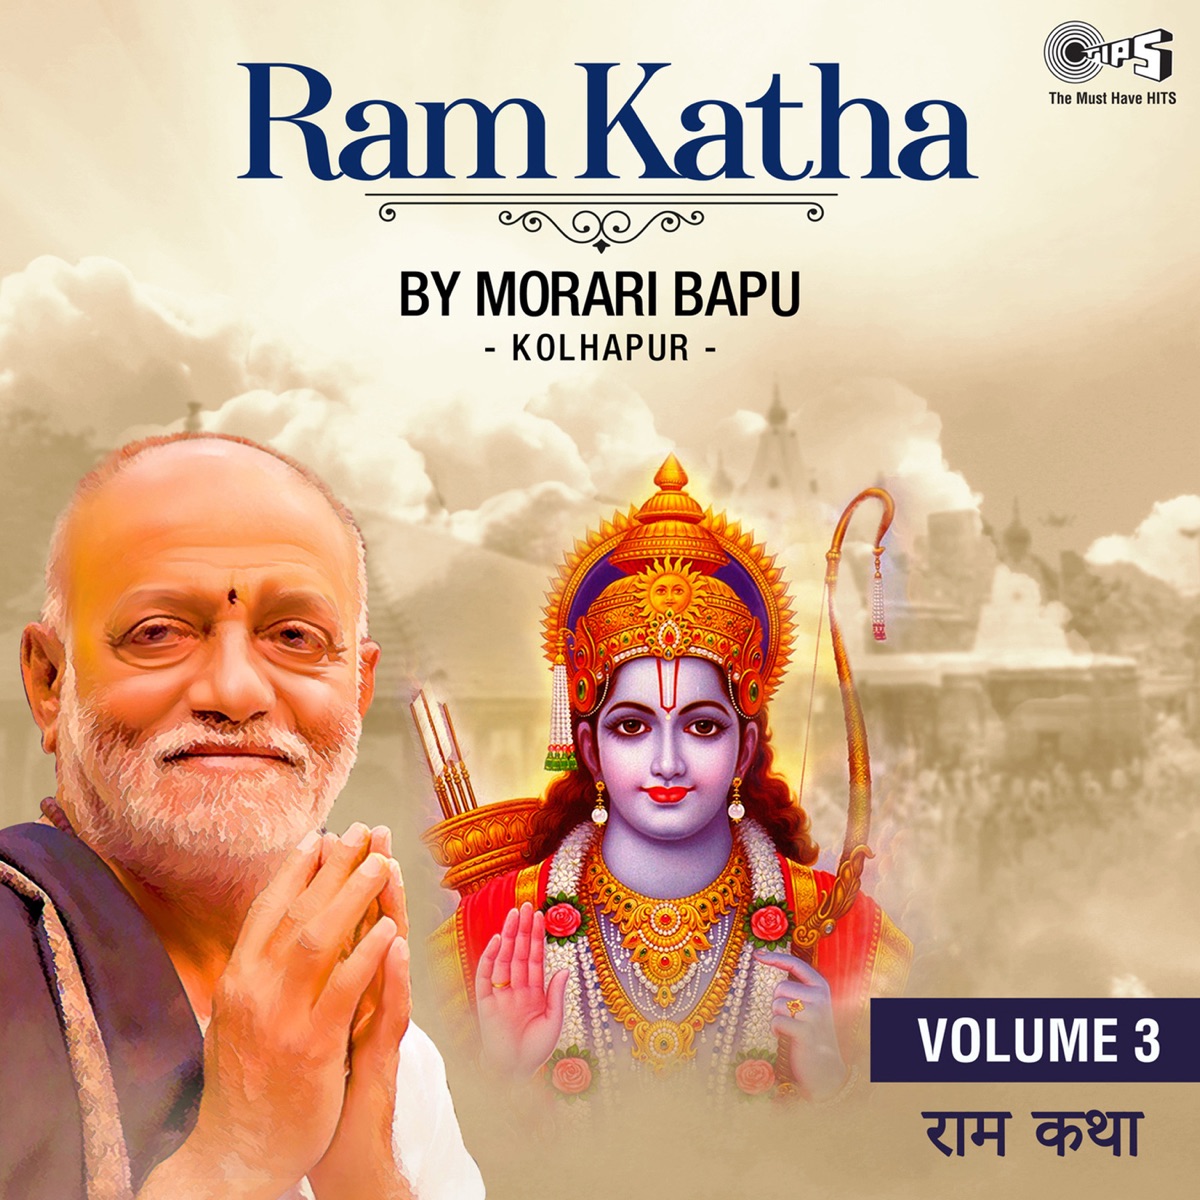 Ram Katha By Morari Bapu Kolhapur, Vol. 3 (Ram Bhajan) by Morari Bapu on  Apple Music